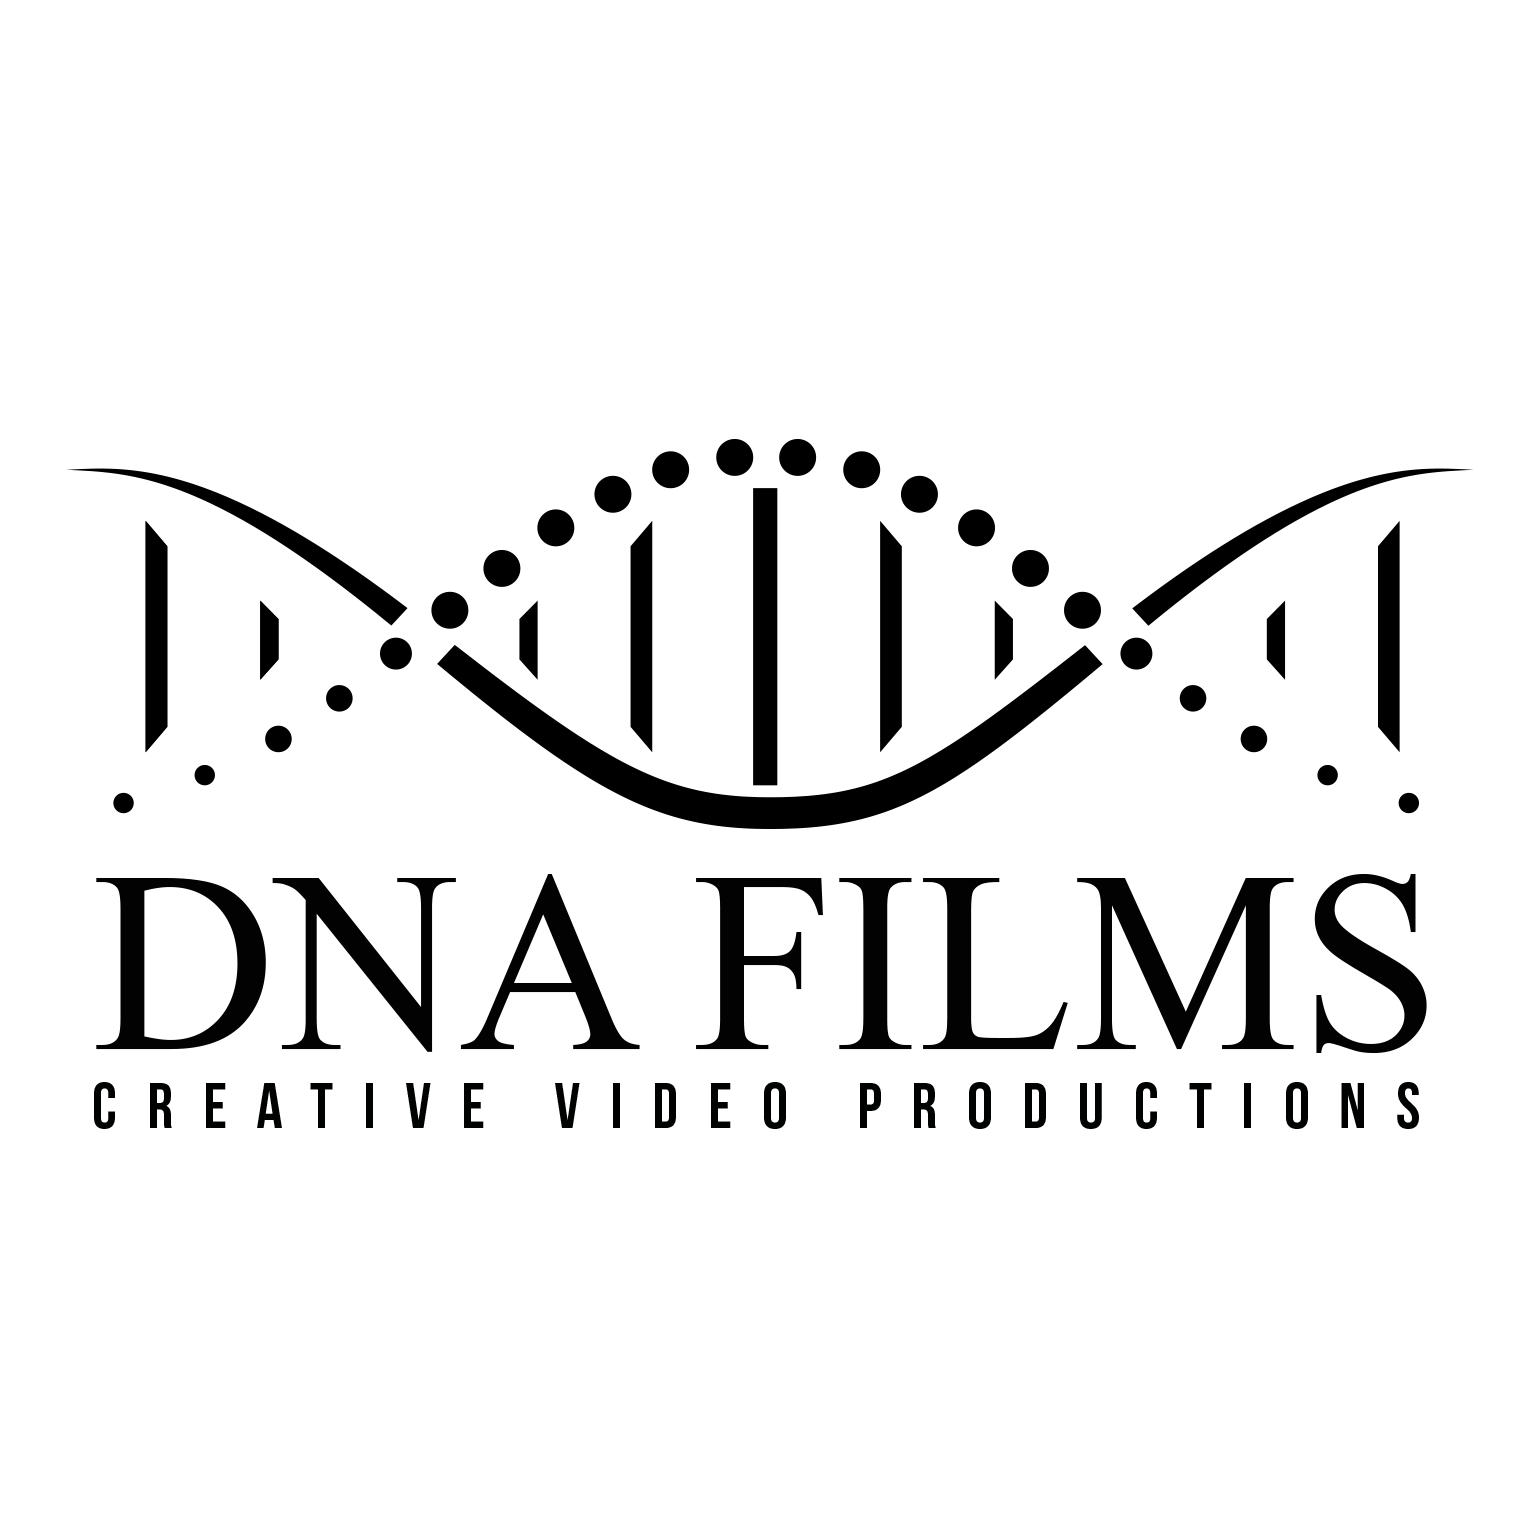 DNA Films